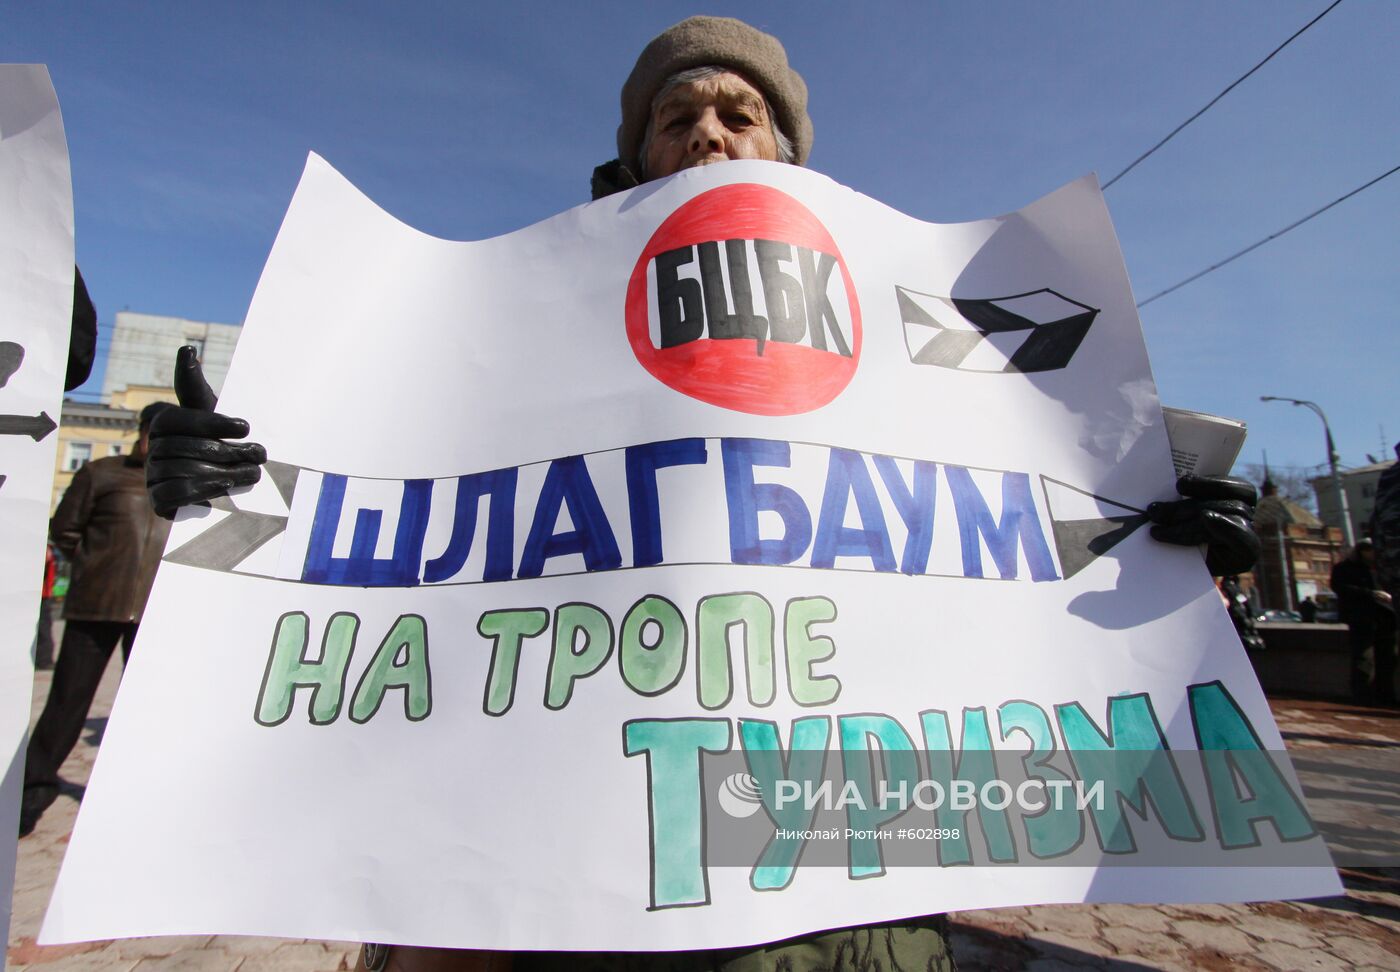 На митинге "Спасая Байкал, спасем Россию!"